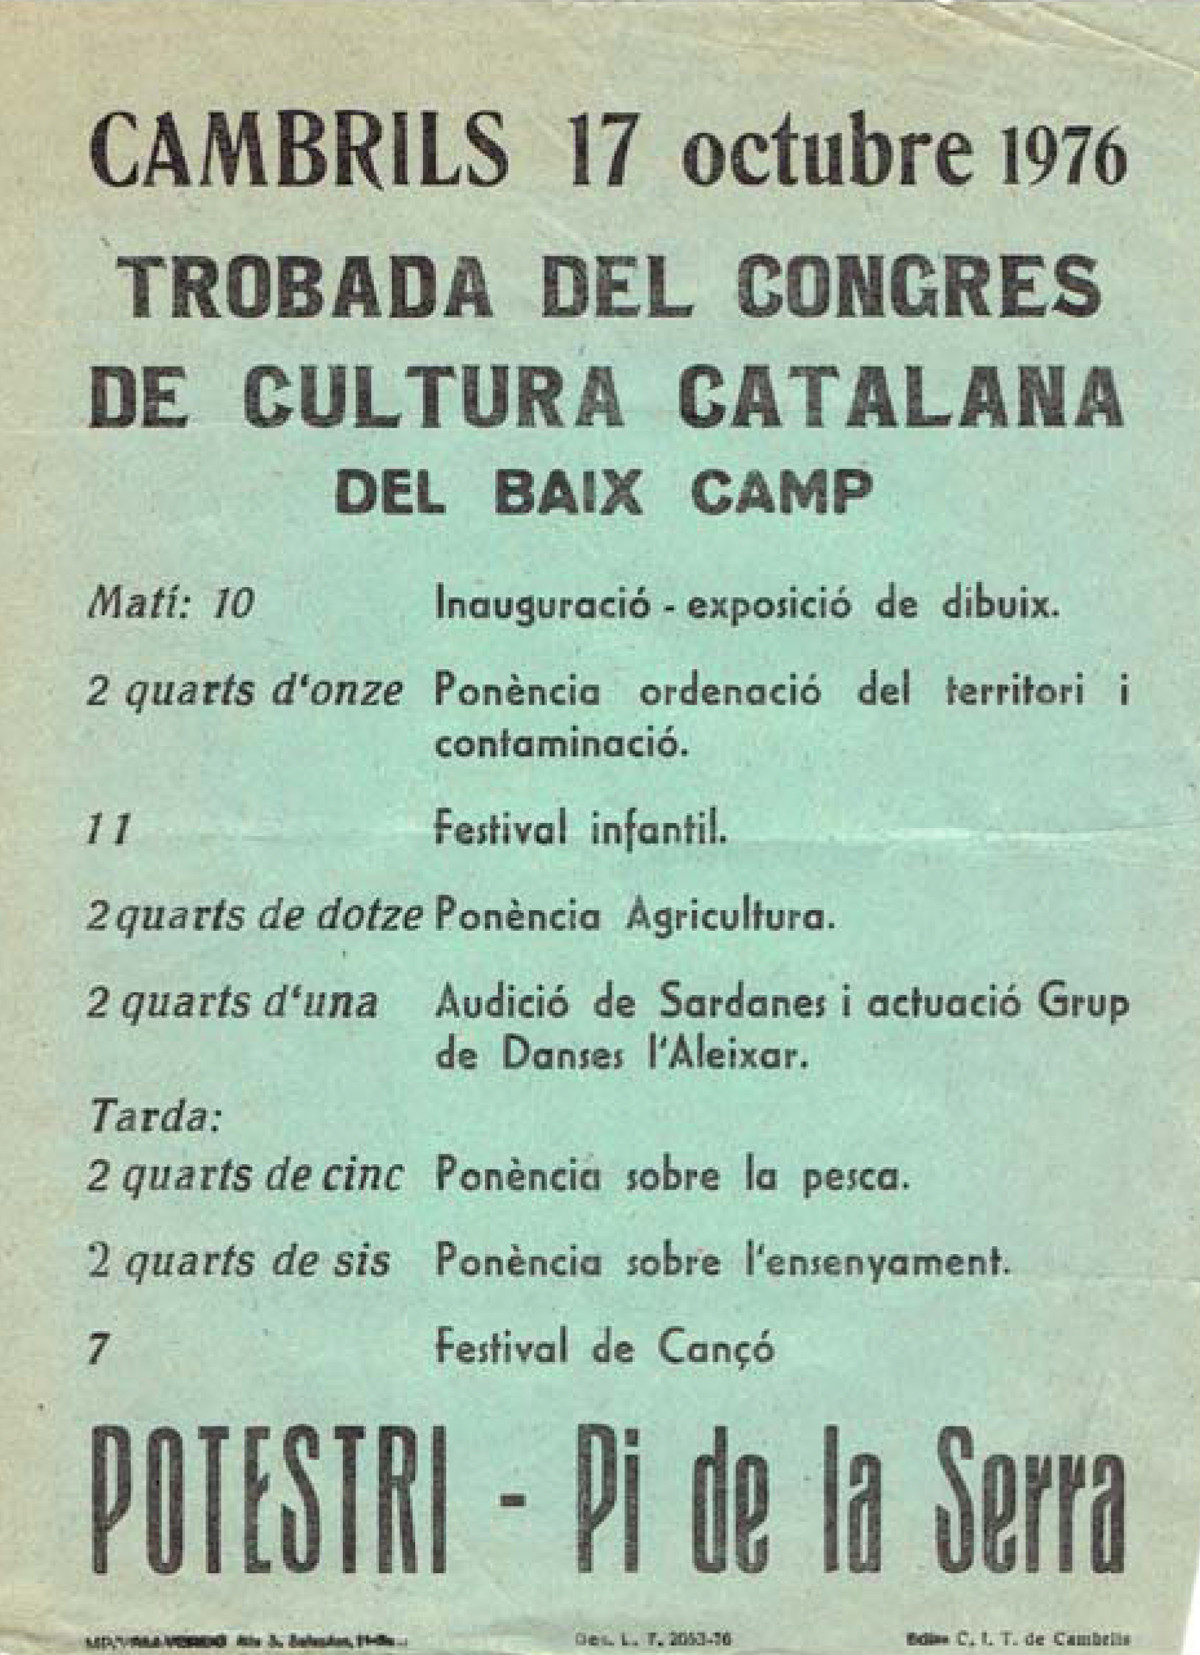 congres cultura catalana baix camp cambrils